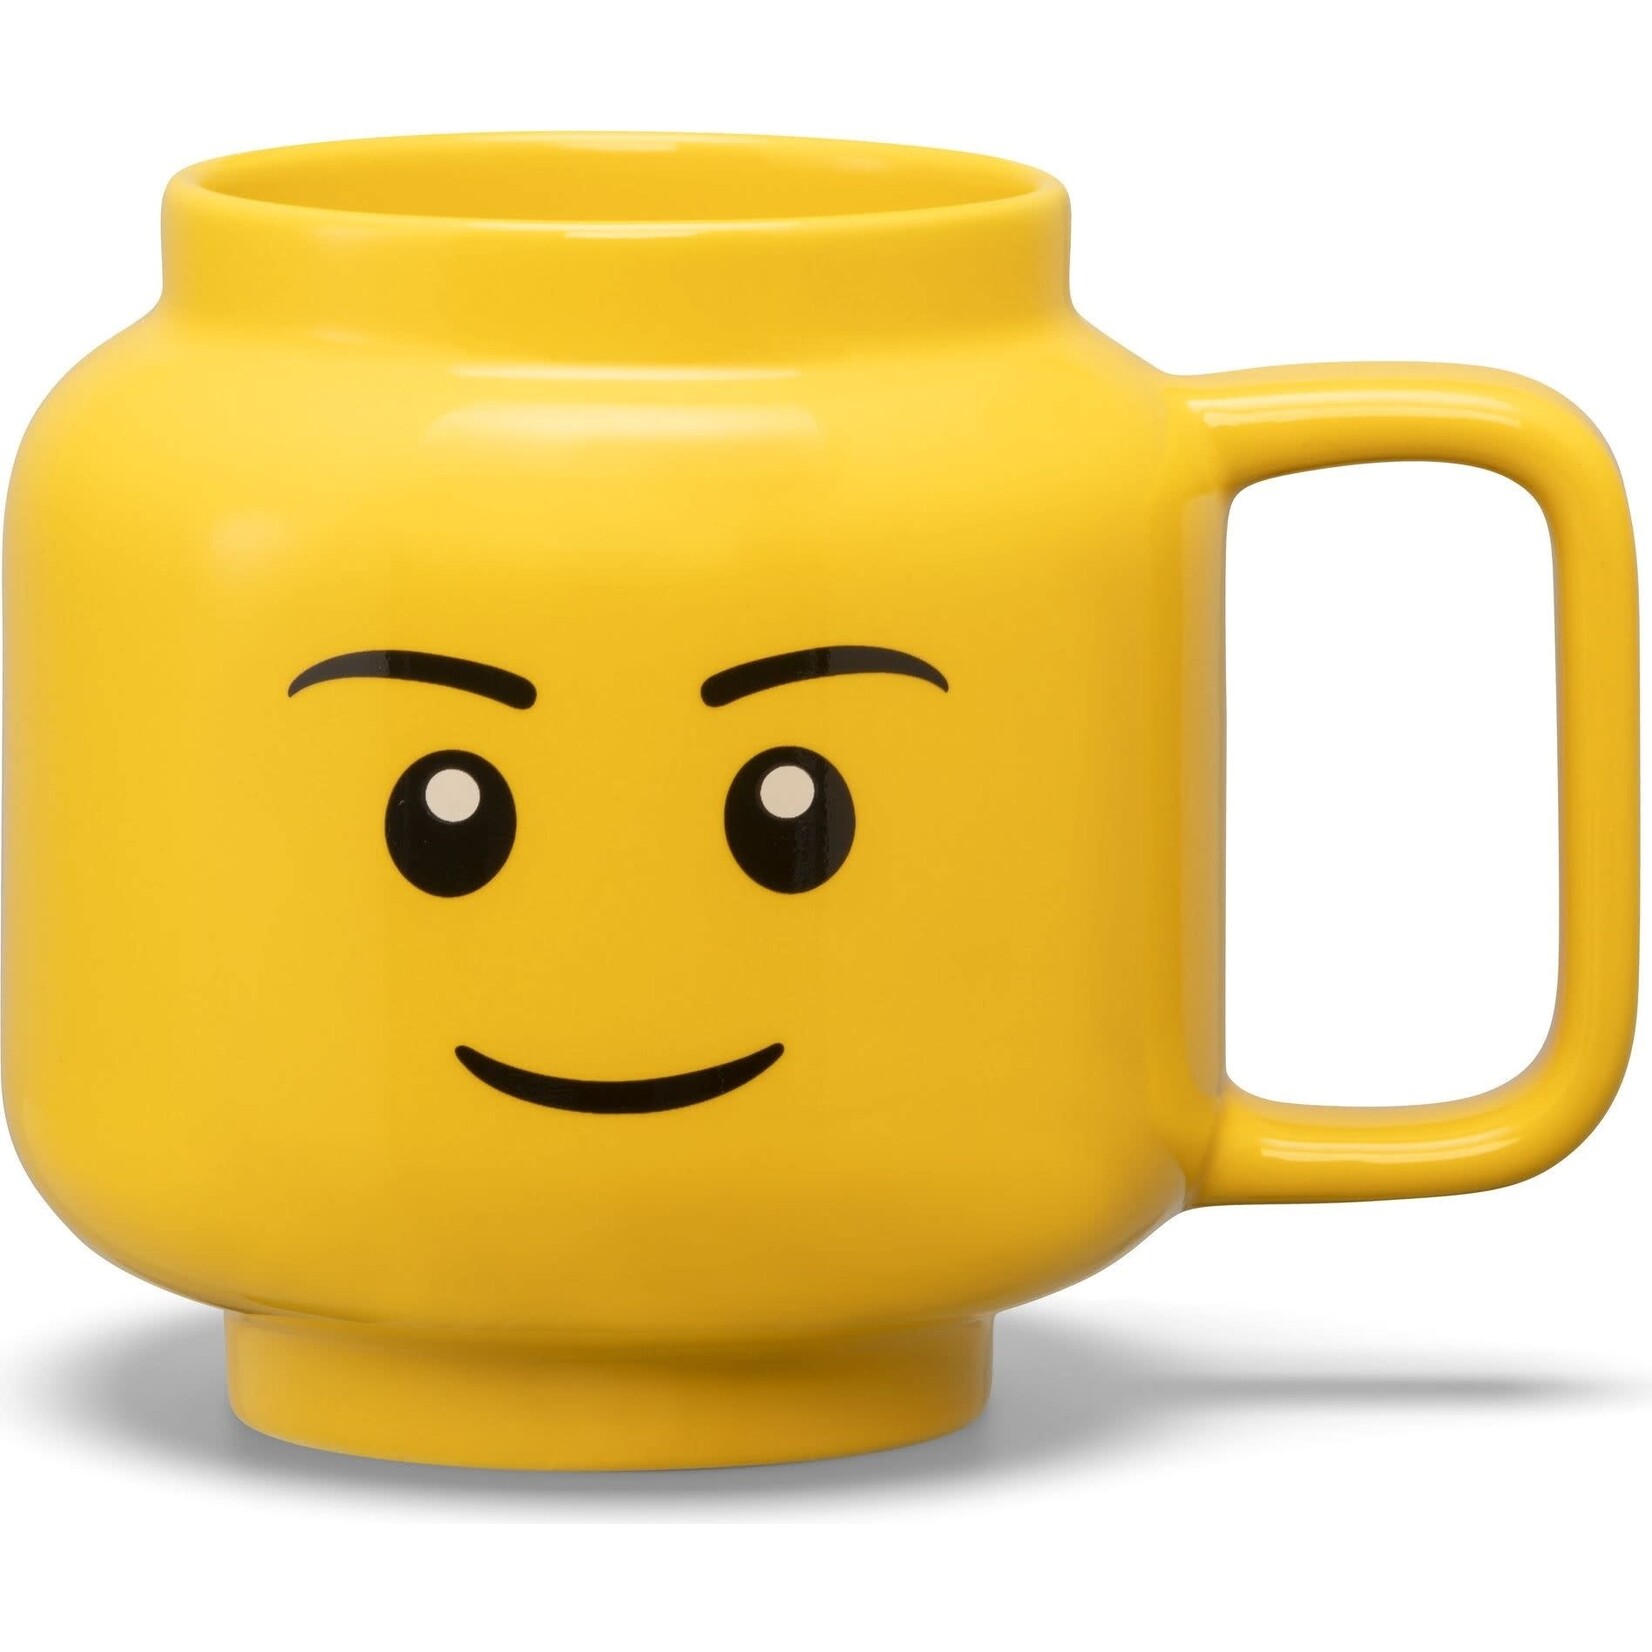 LEGO Grote keramische mok met jongenshoofd - 5007875